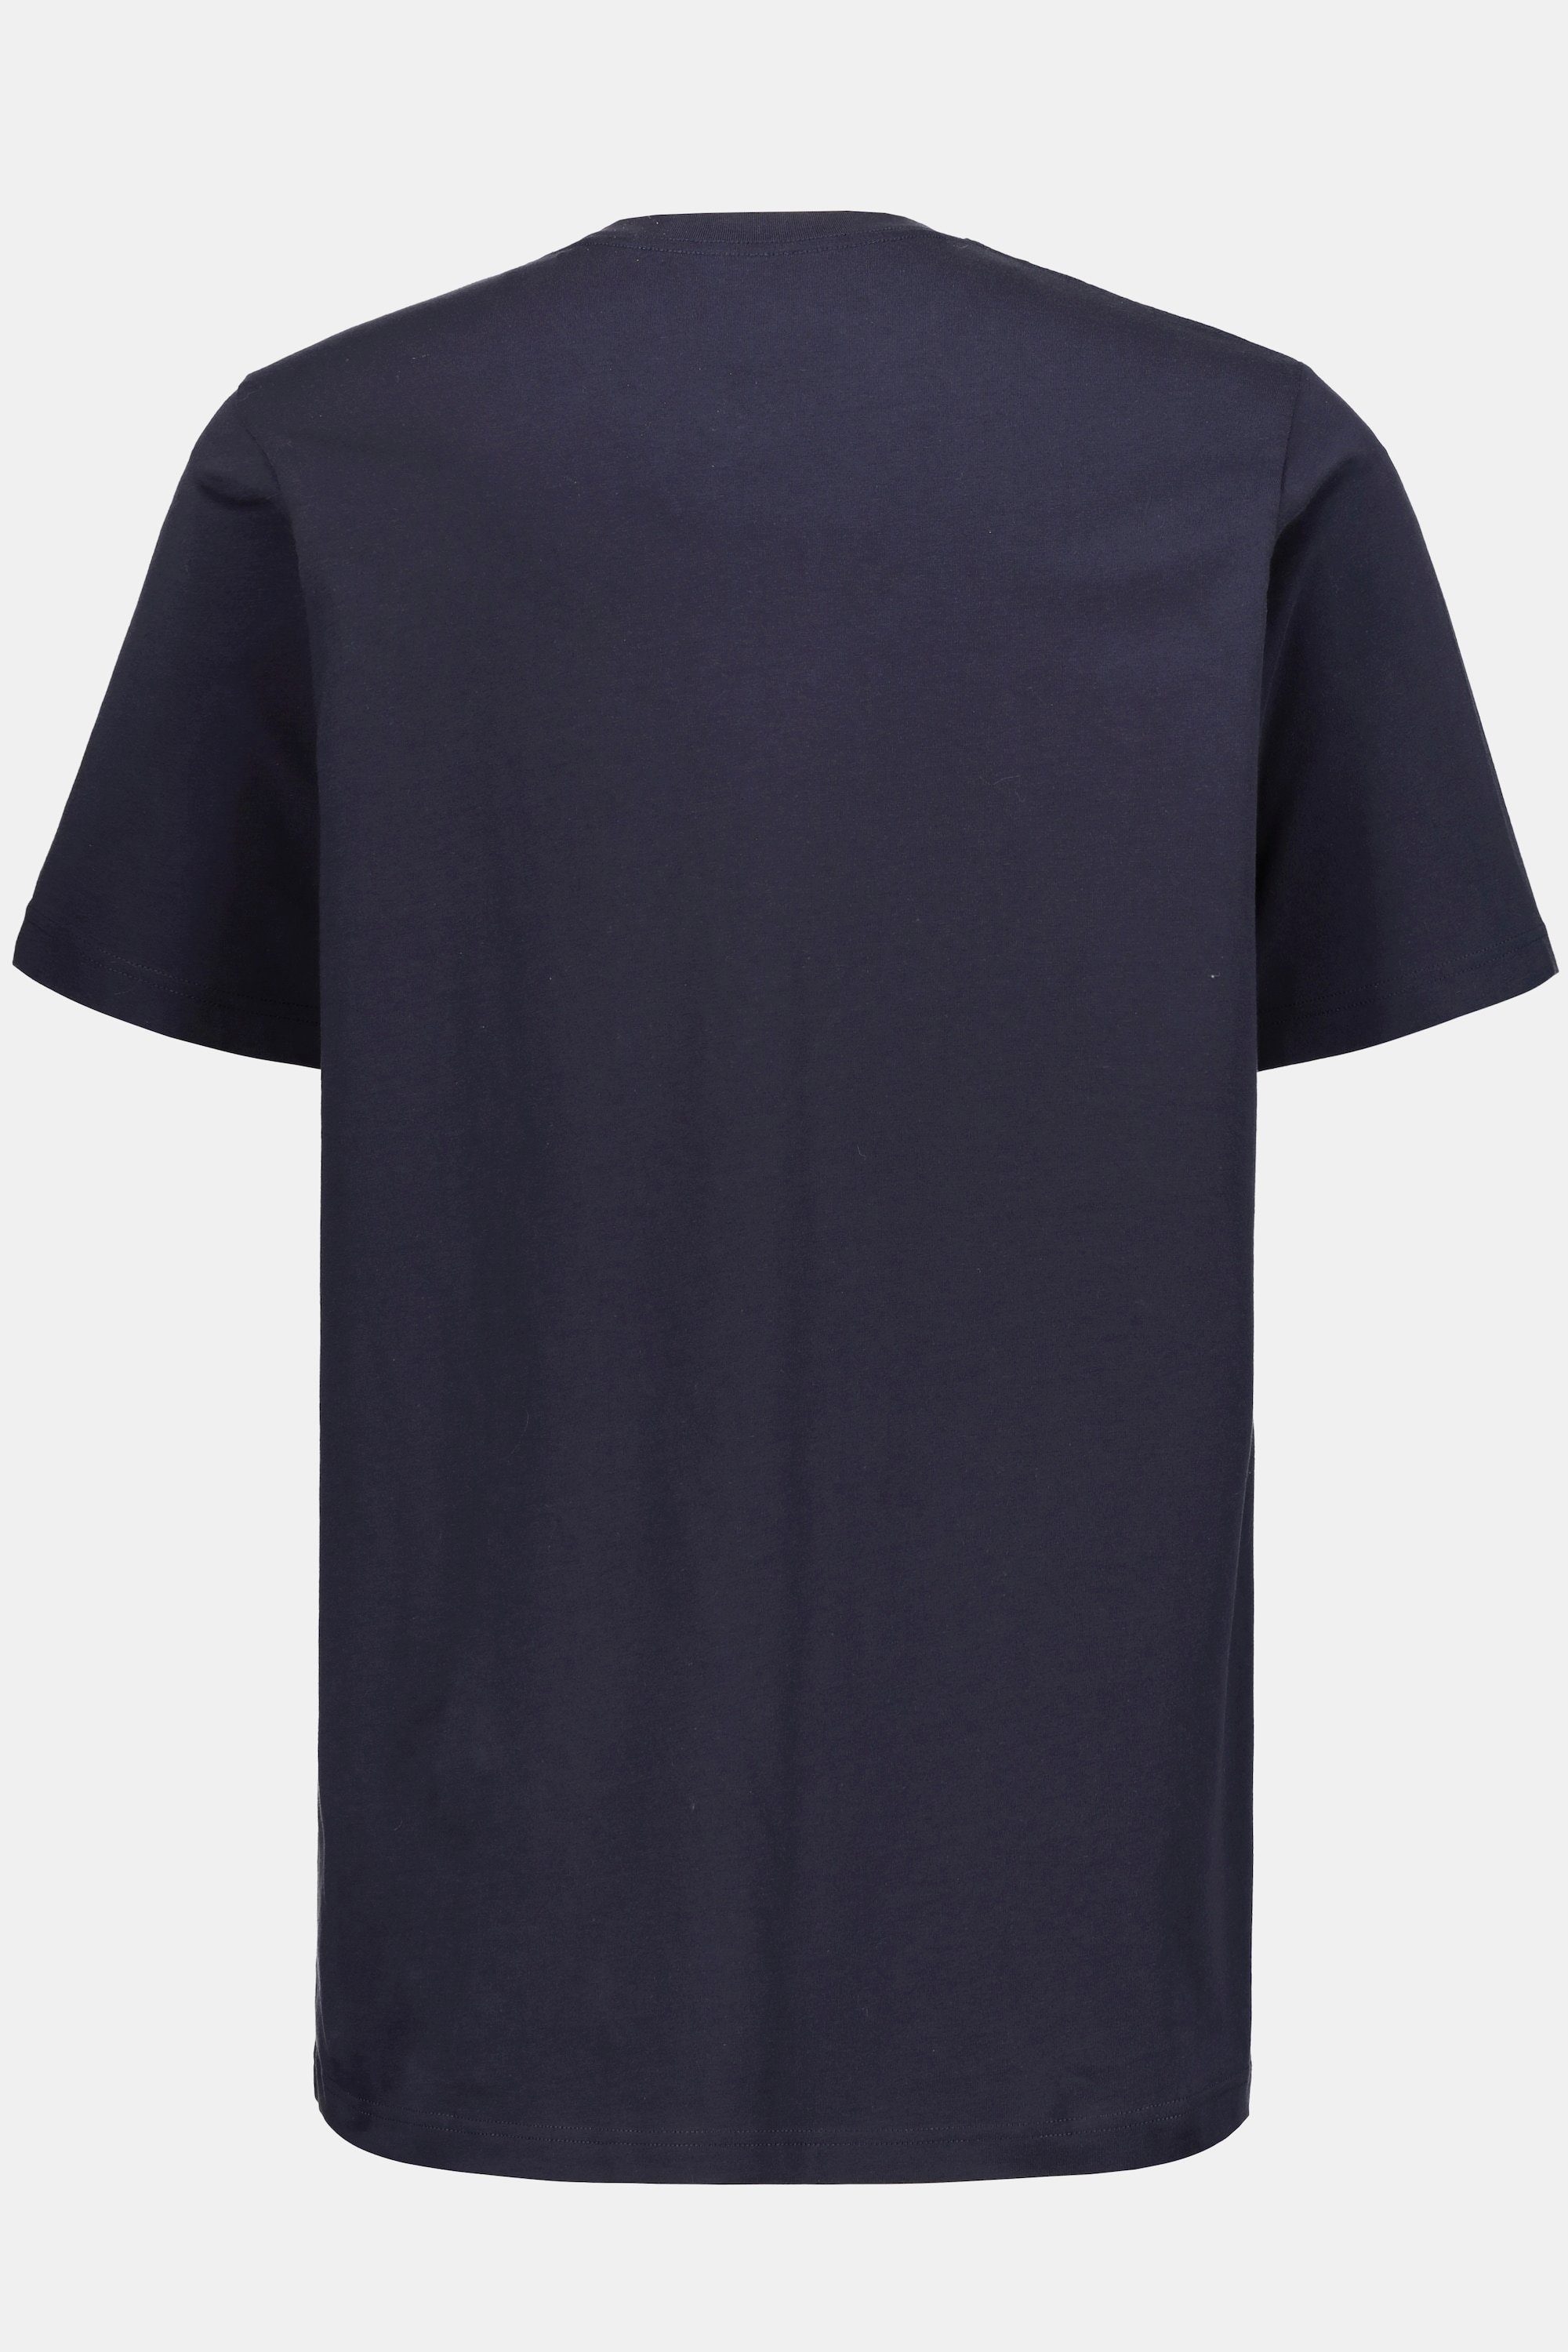 JP1880 marine bis T-Shirt T-Shirt Basic V-Ausschnitt dunkel 8XL